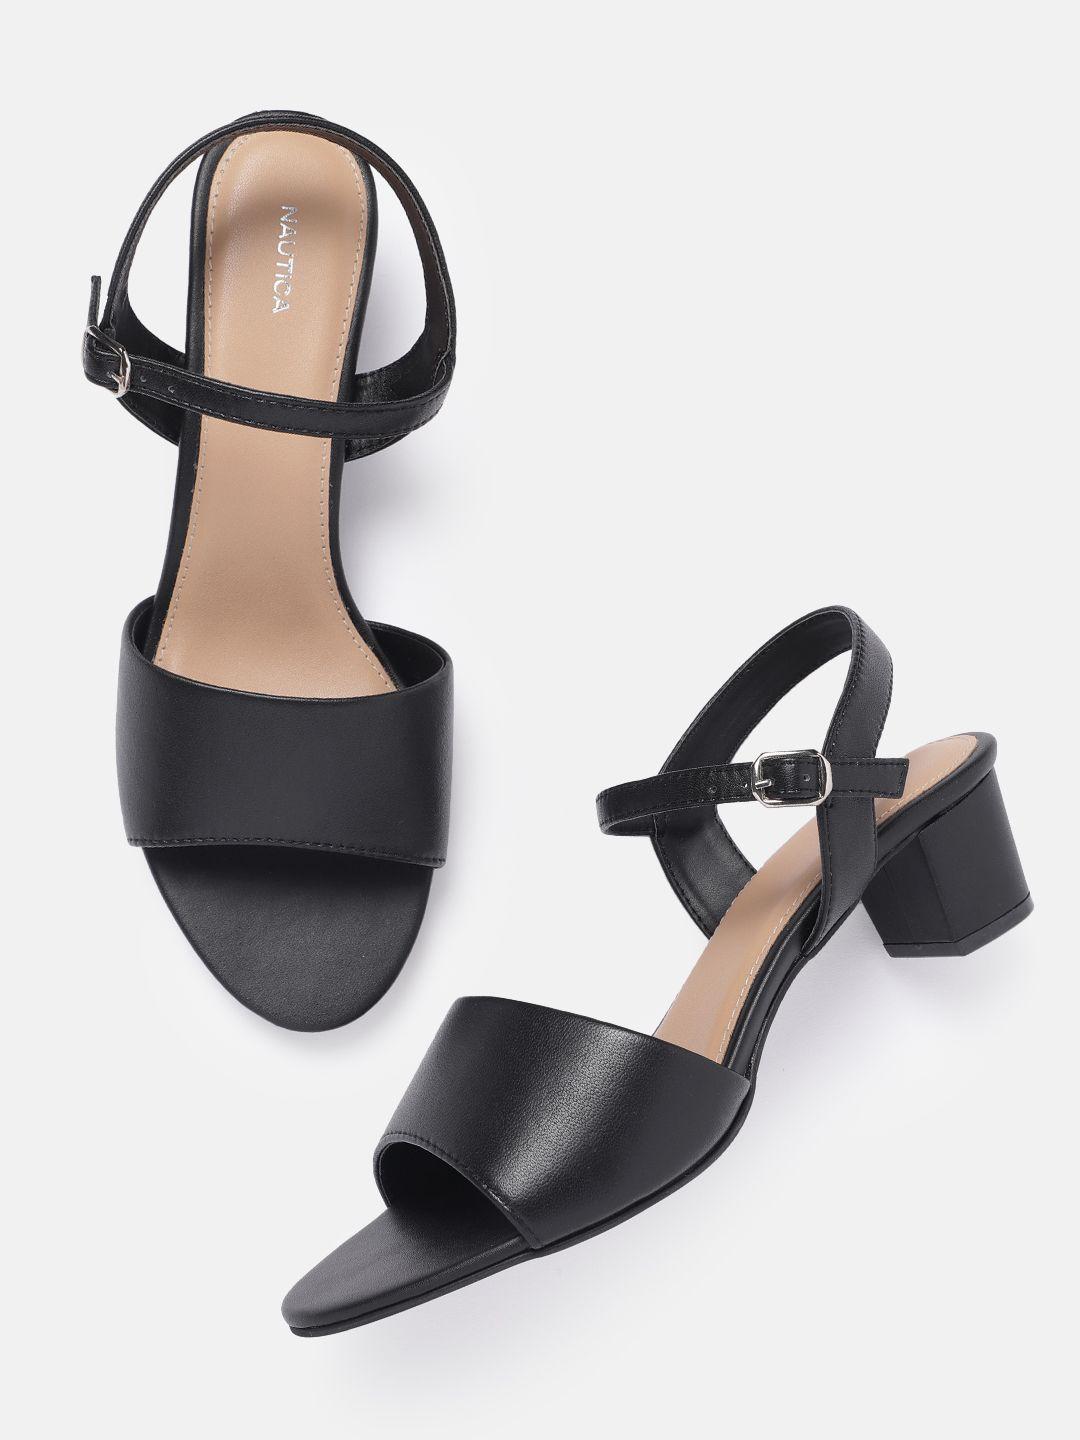 nautica block heels